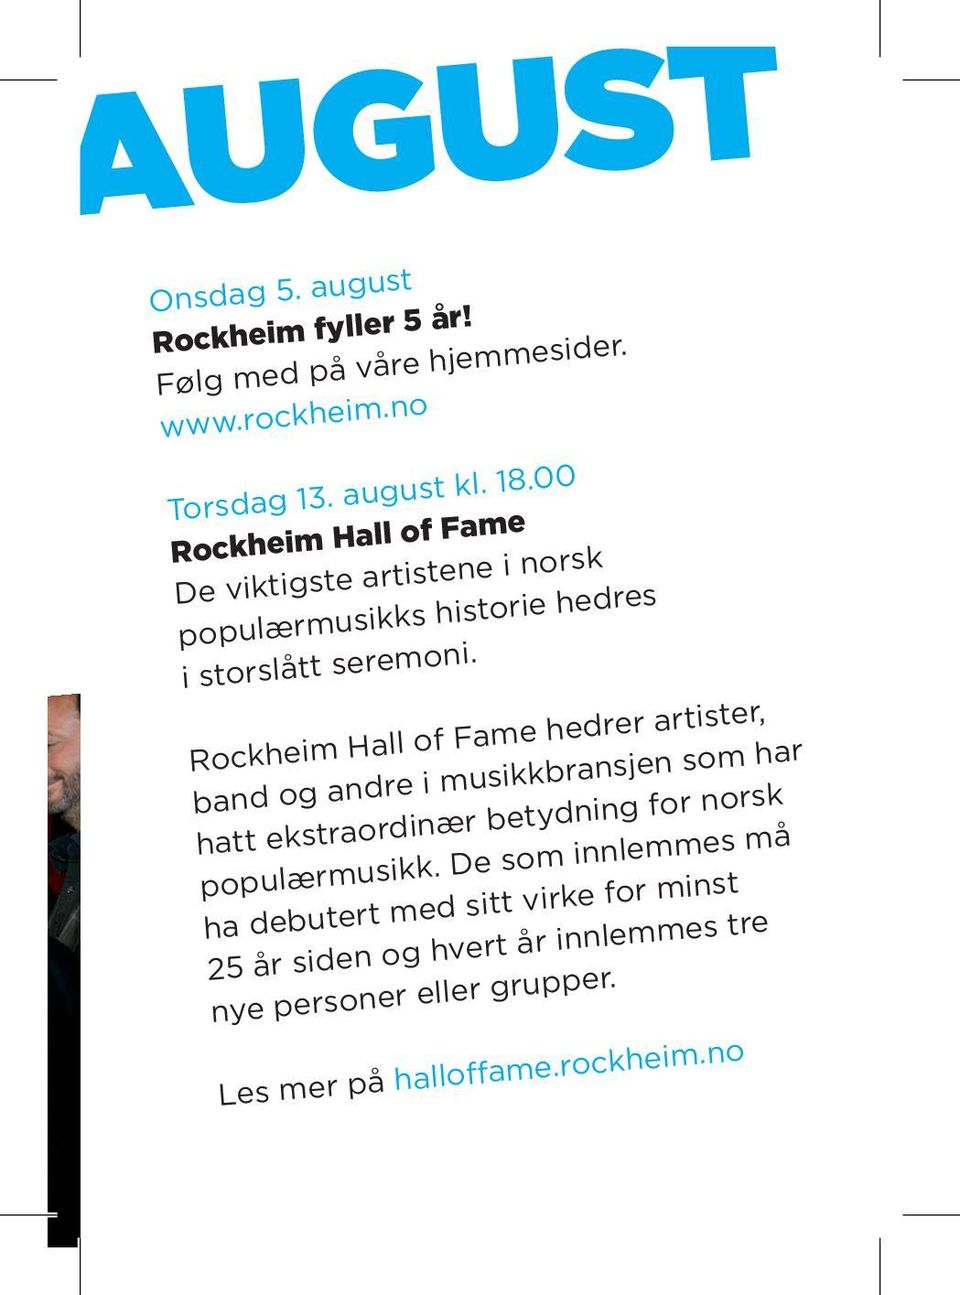 Rockheim Hall of Fame hedrer artister, band og andre i musikkbransjen som har hatt ekstraordinær betydning for norsk